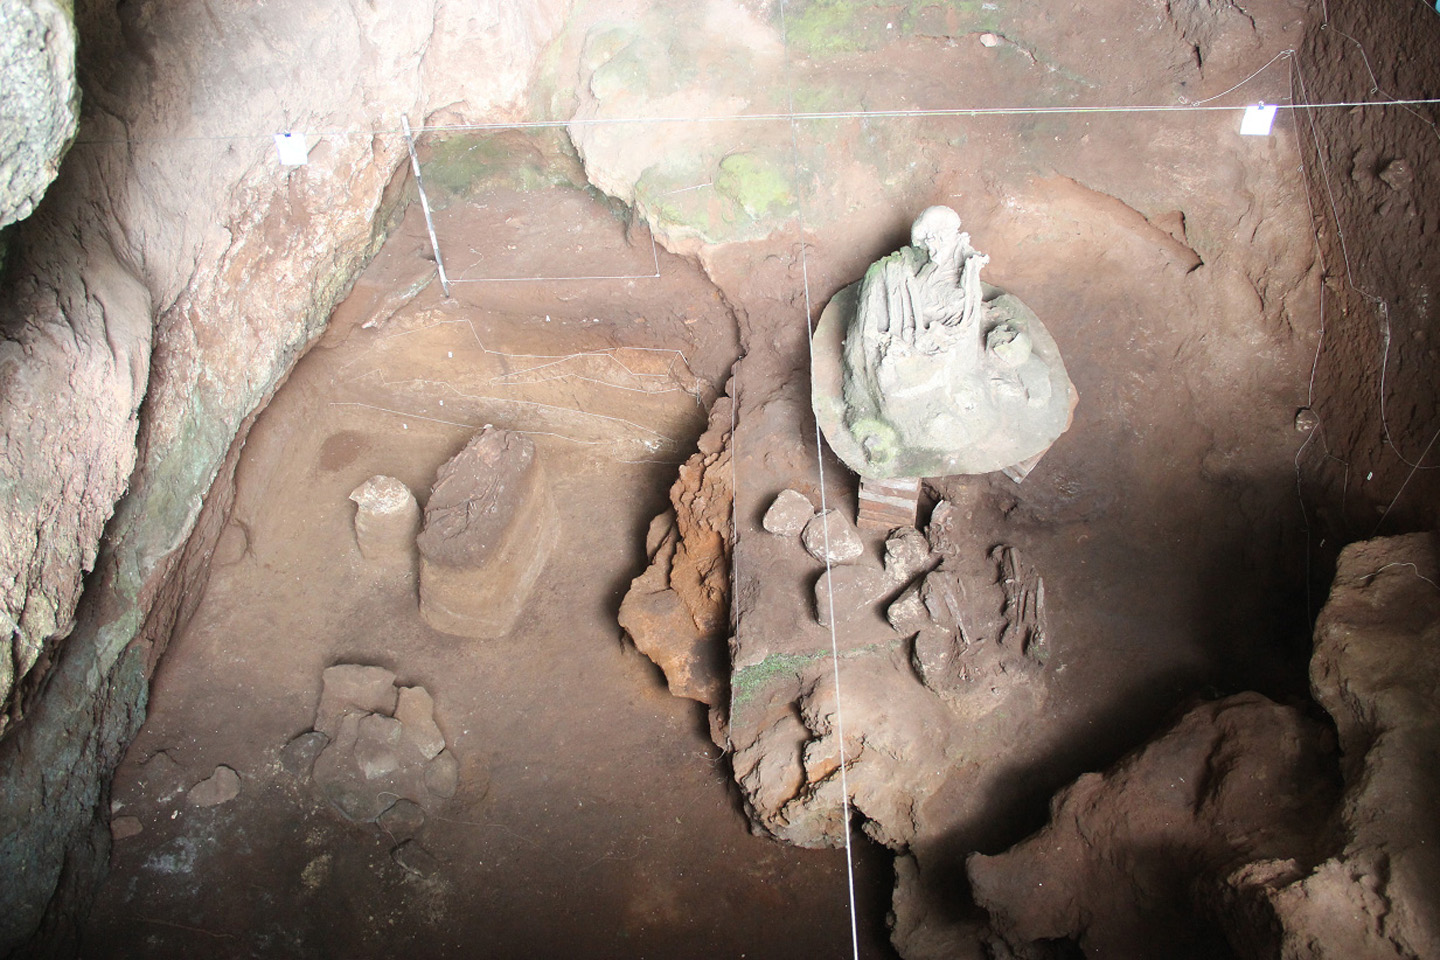 Rangka manusia yang ditemukan pada ekskavasi di Gua Pawon (dok. Lutfi Yondri, 2017)